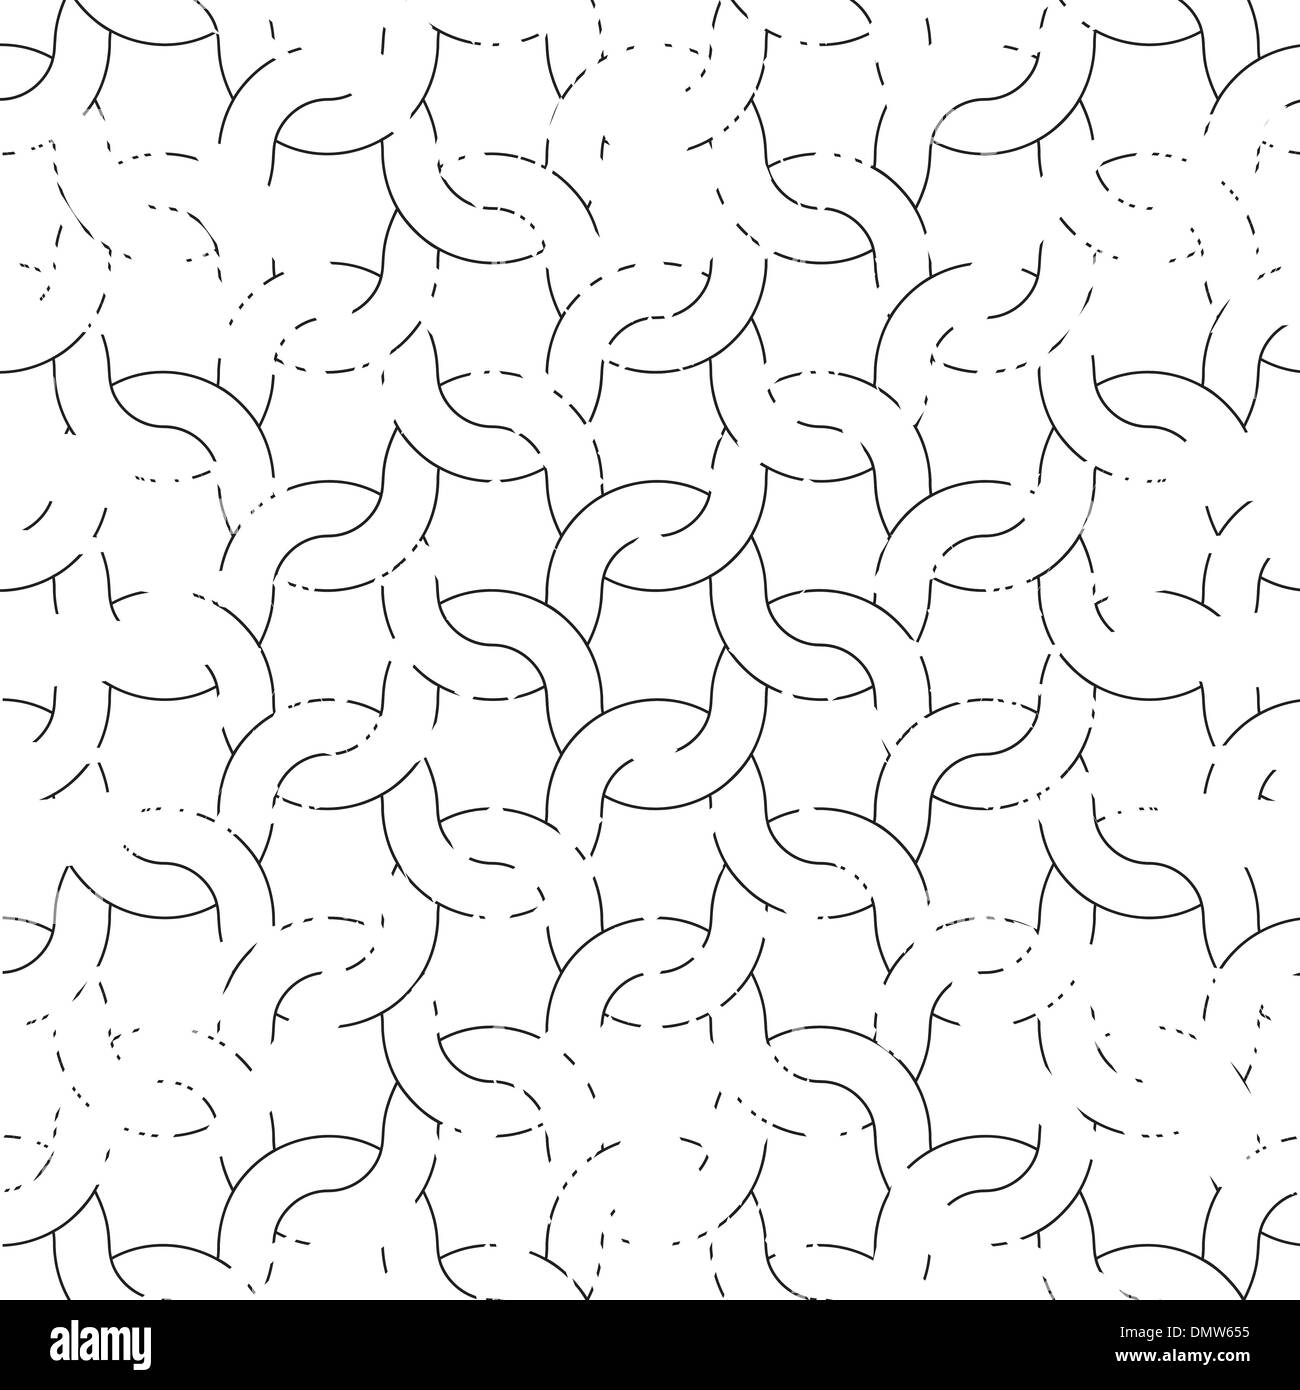 Grunge noir et blanc avec motif knitting Illustration de Vecteur